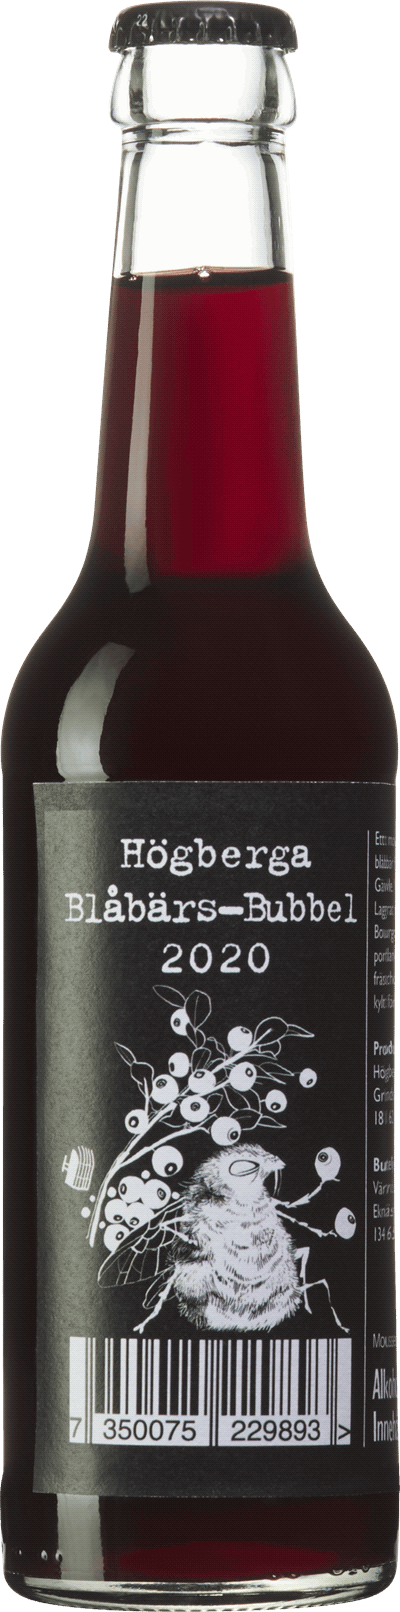 Högberga Blåbärs-bubbel